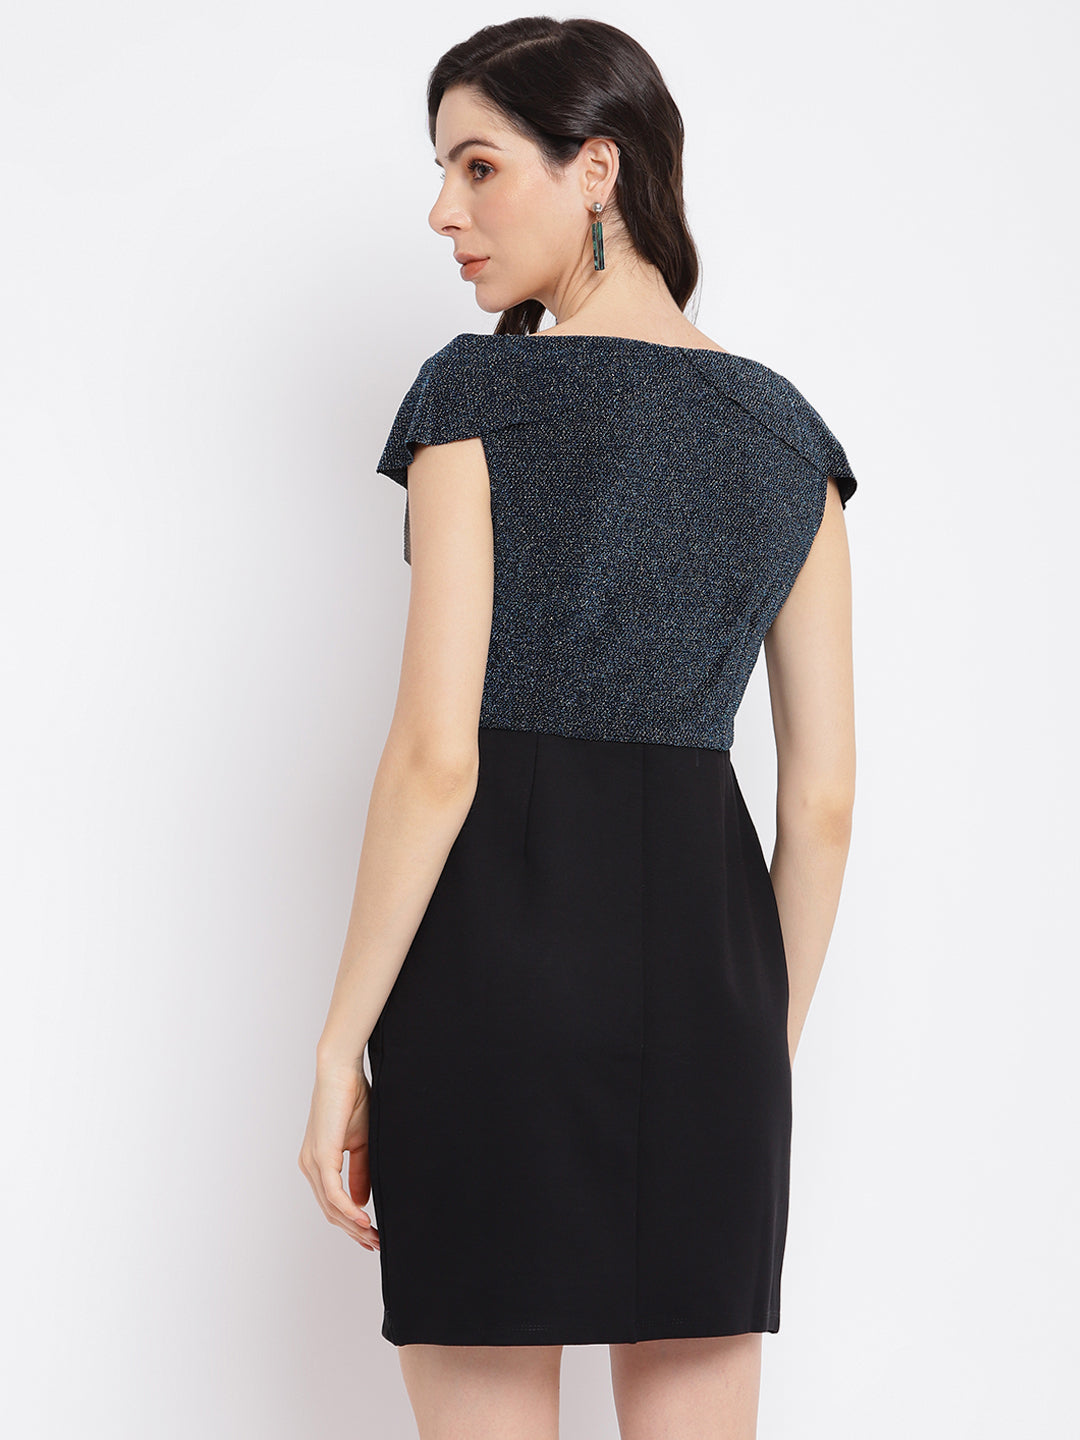 Black Half Sleeve 2 Fir 1 Dress With Lurex Knit